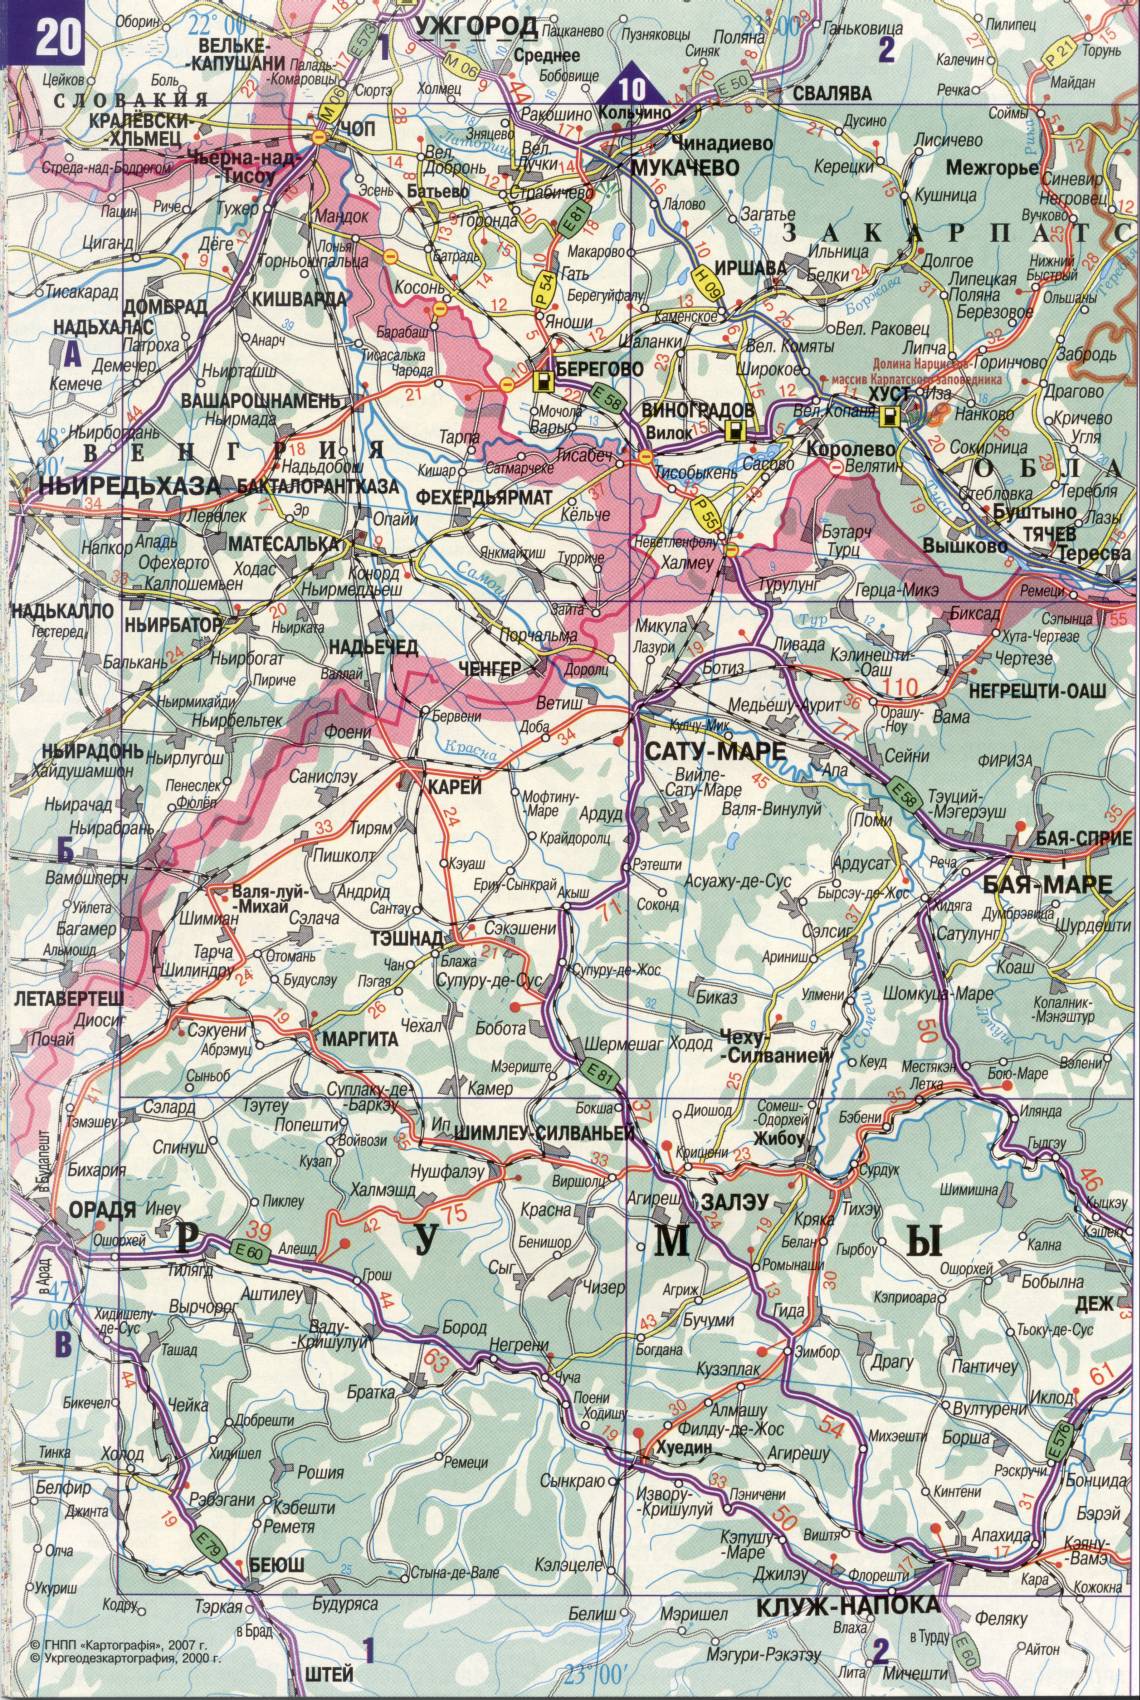 Karte der Ukraine. Detaillierte Straßenkarte der Ukraine avtomobilnog Satin. kostenlos herunterladen, A2